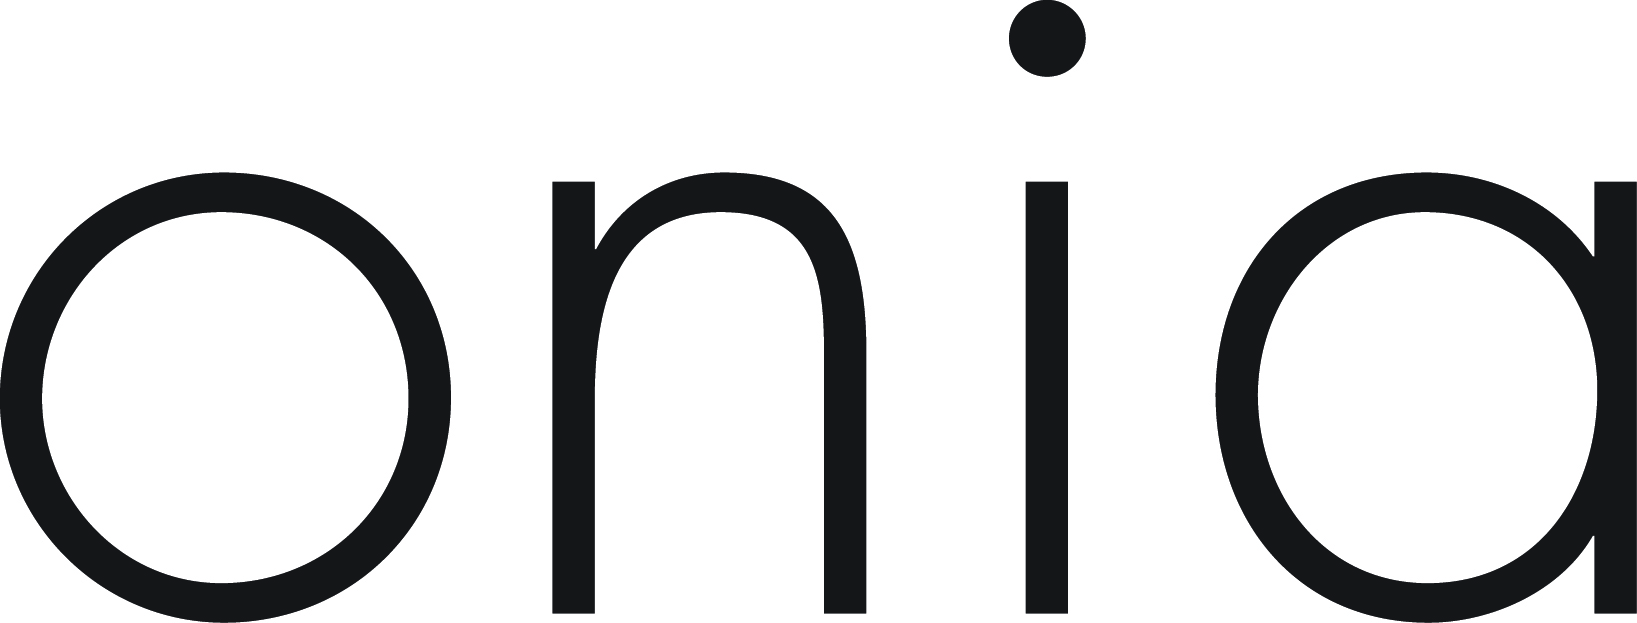 Onia logo